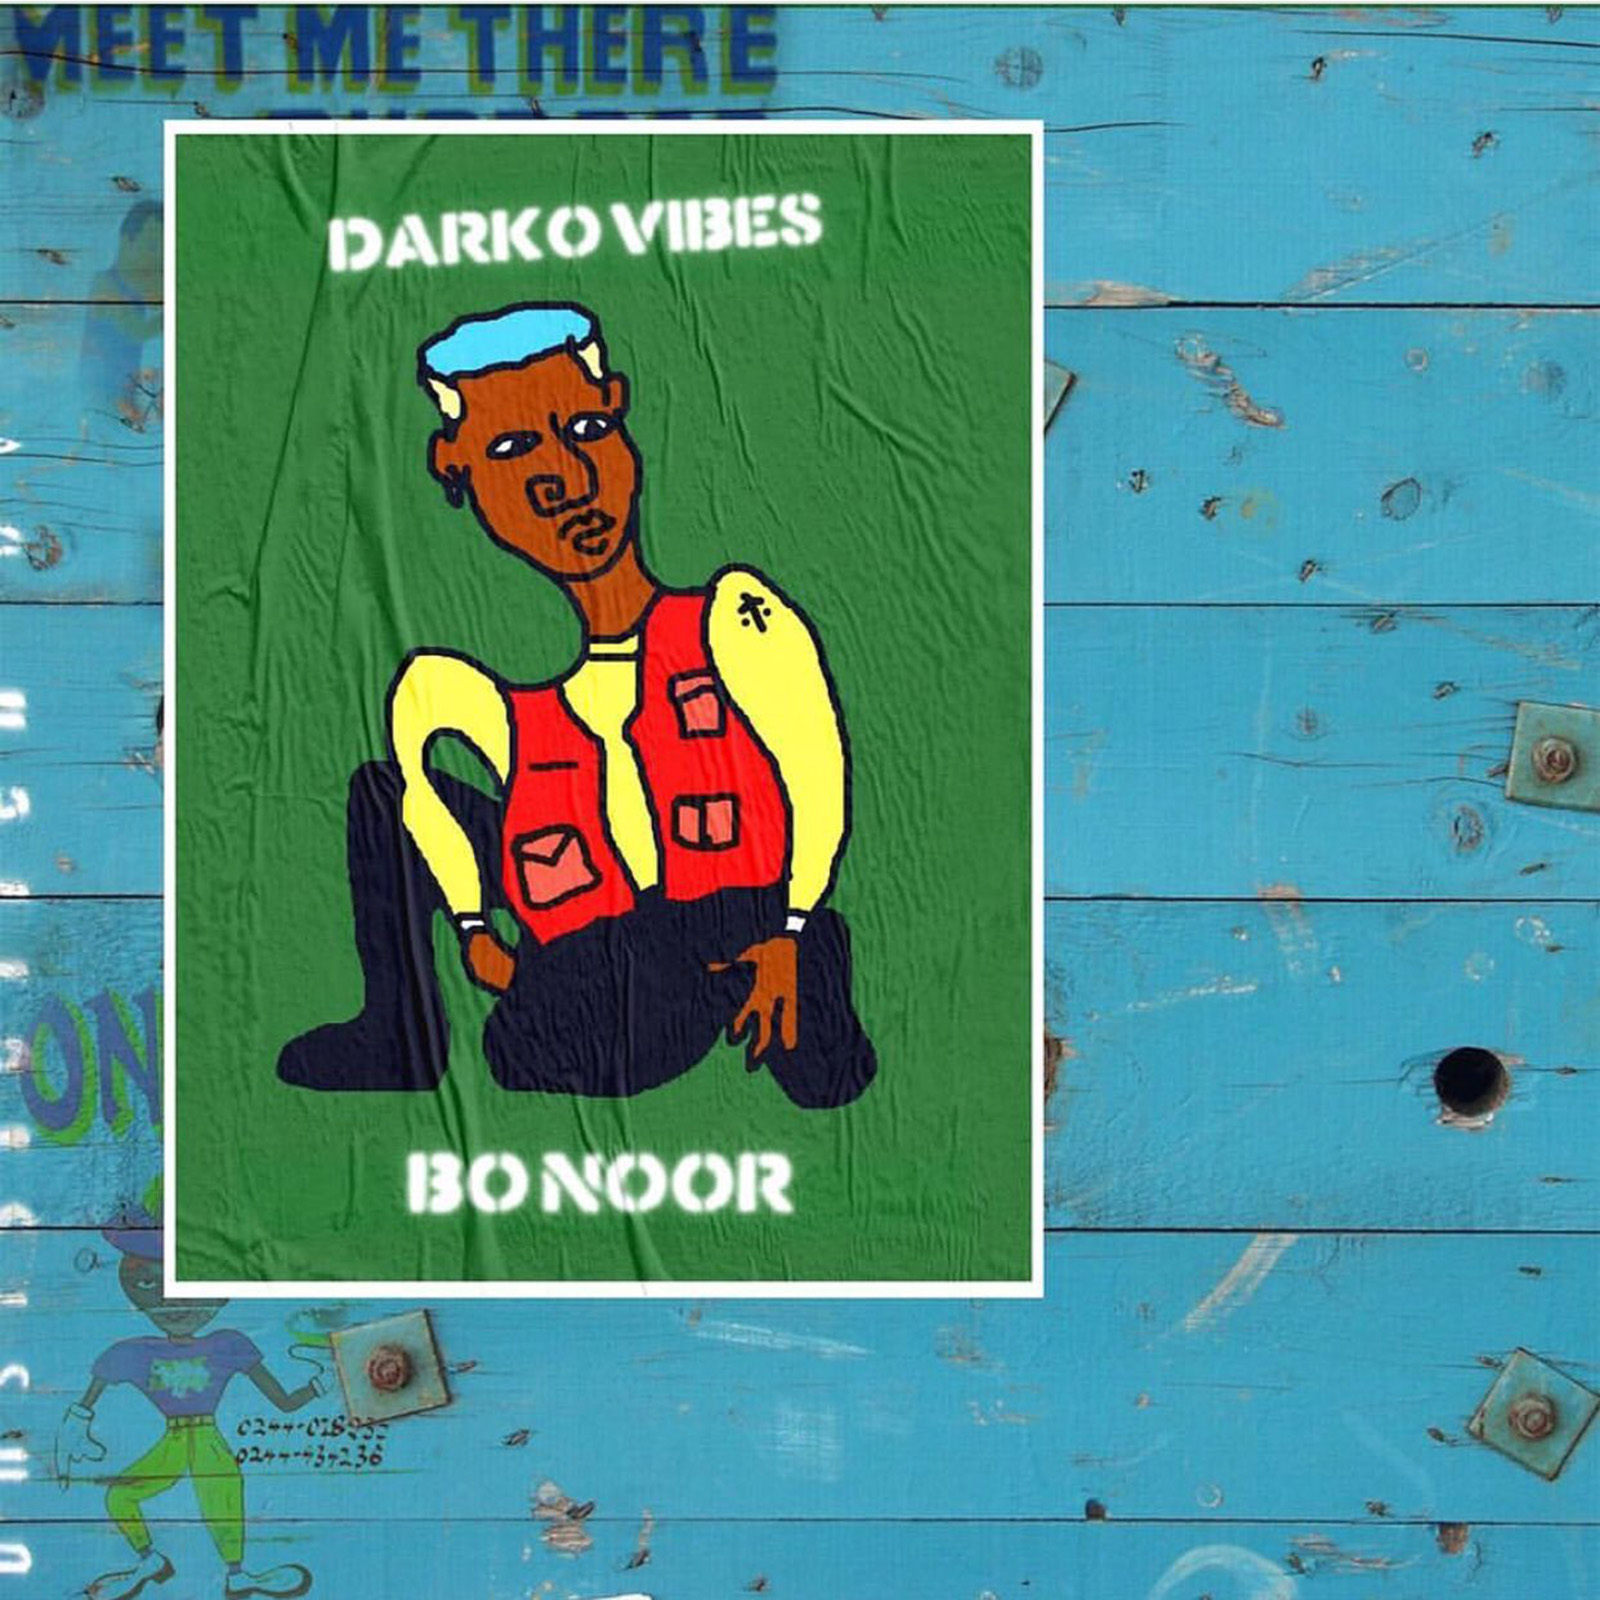 Bo Noor by Darkovibes